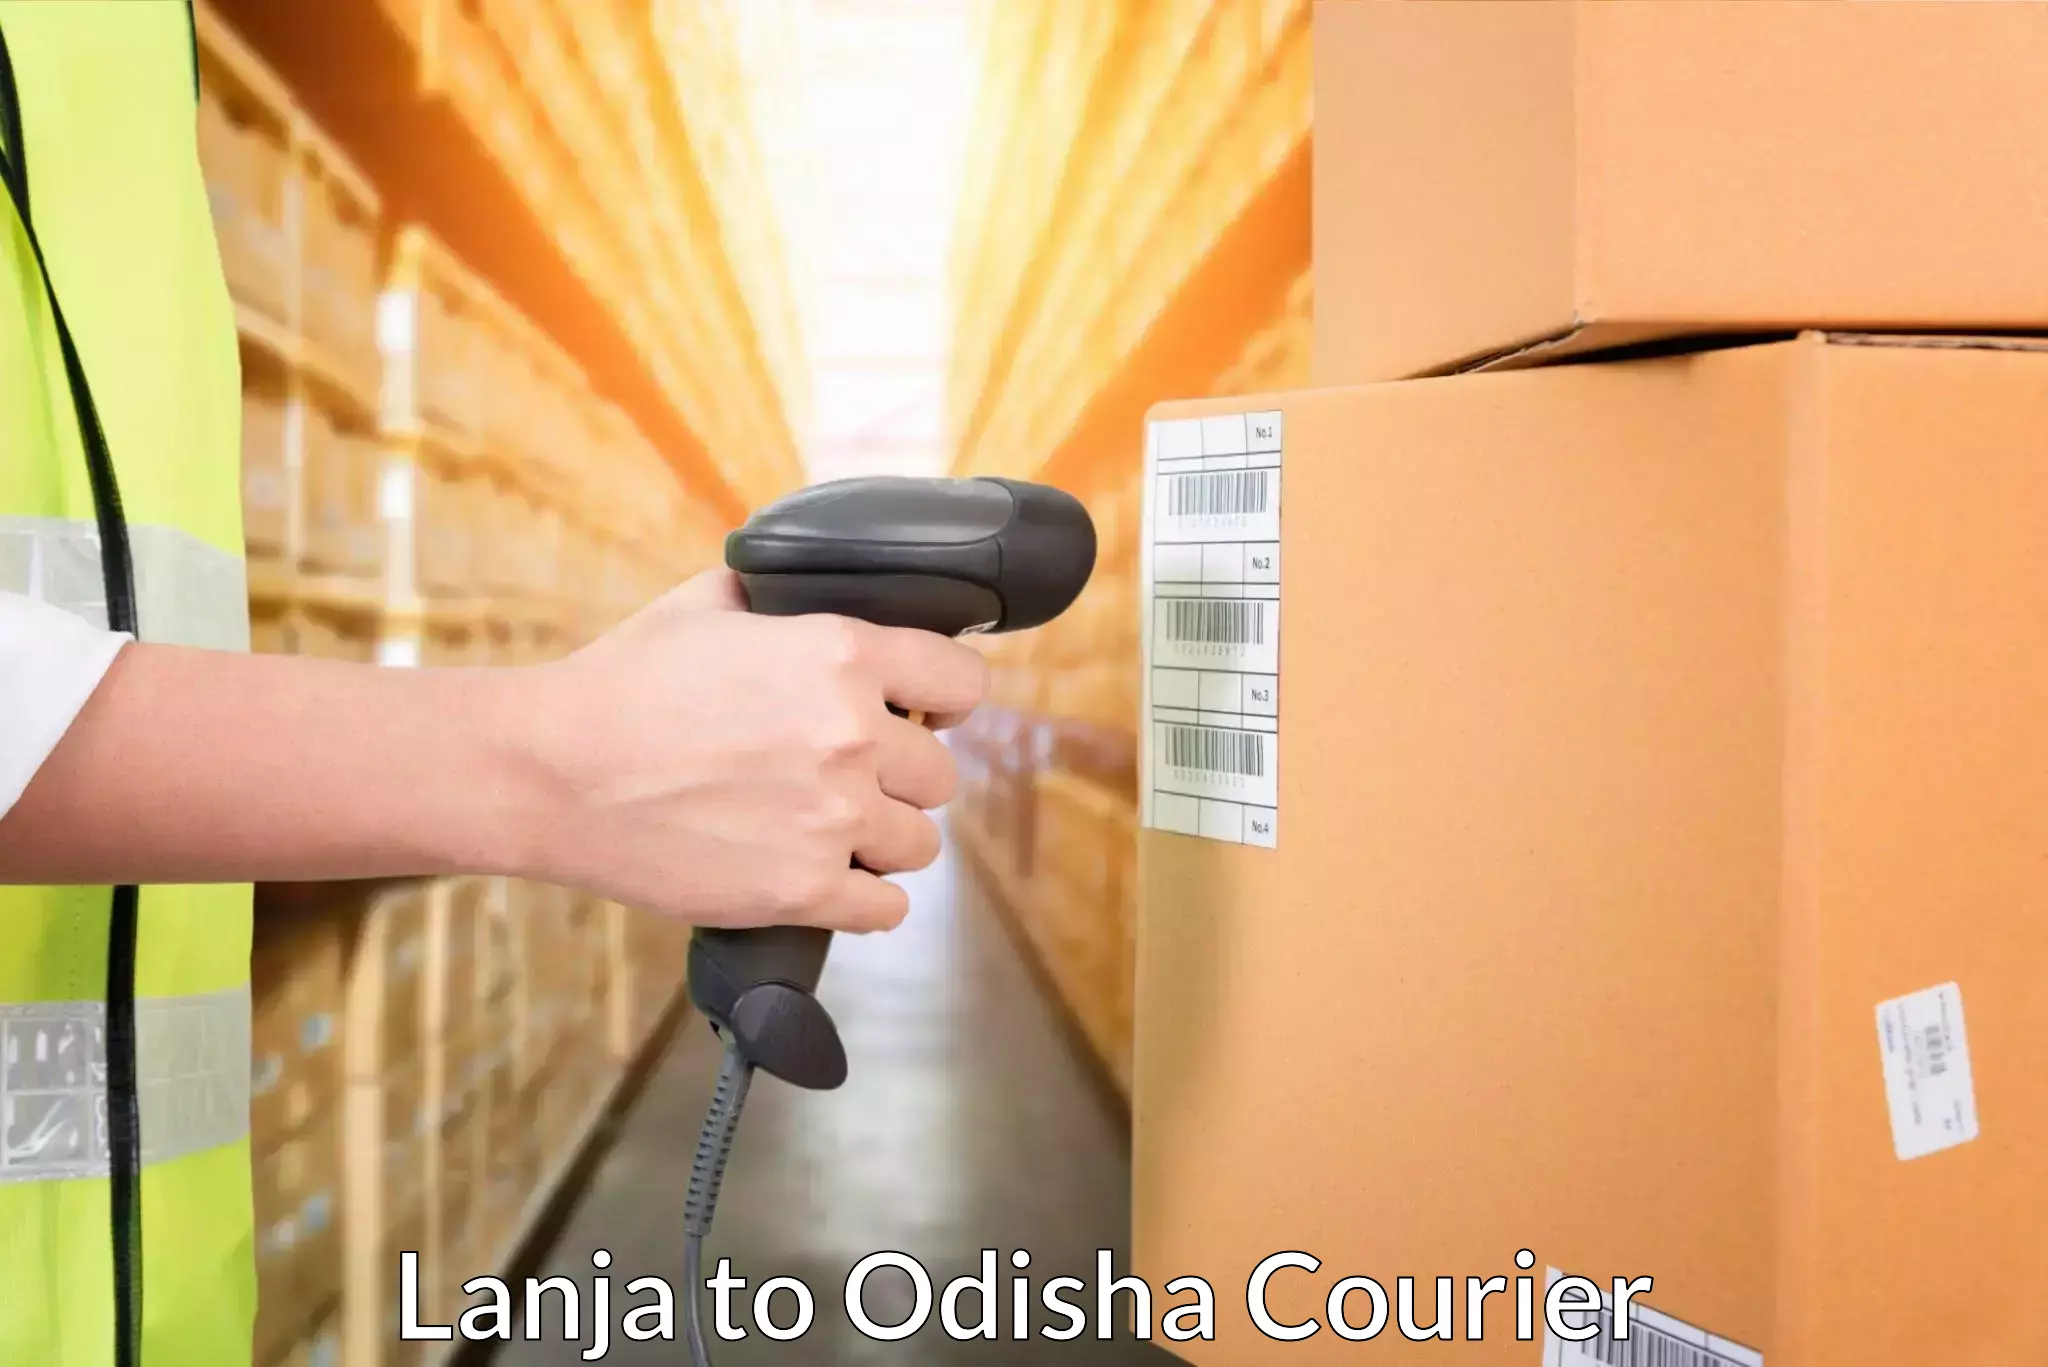 Courier service innovation Lanja to Kesinga